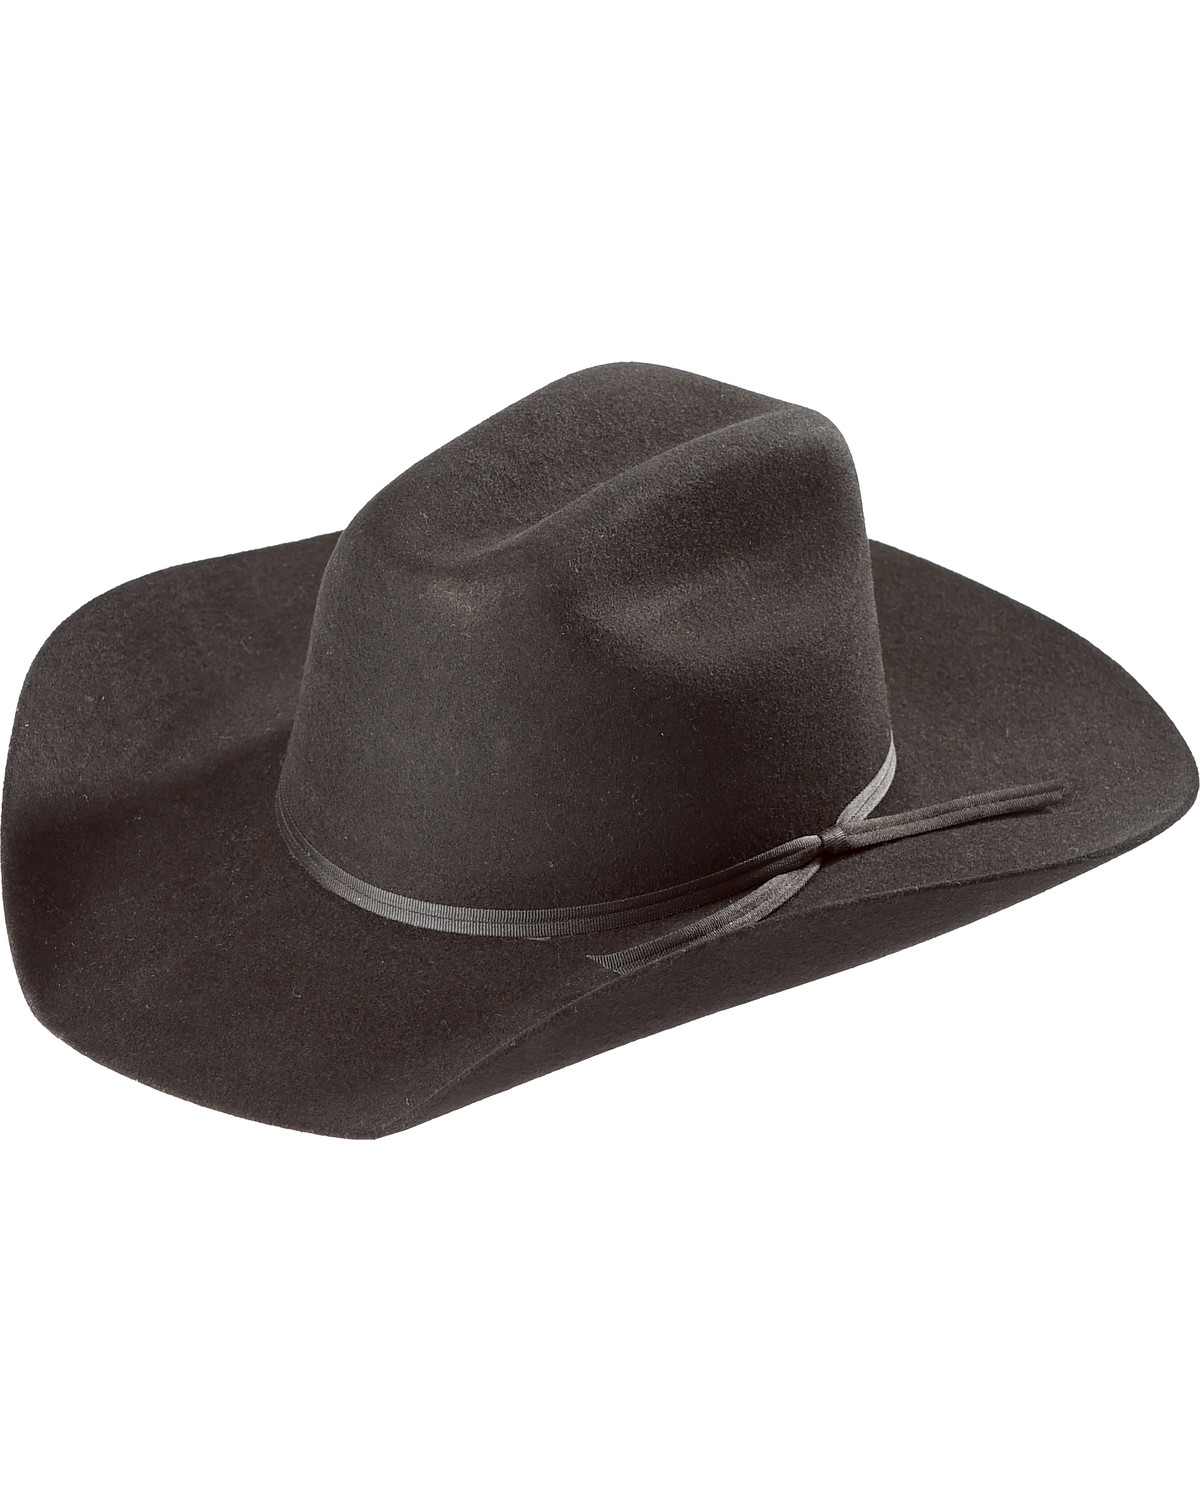 Resistol  Rodeo JR Felt Cowboy Hat